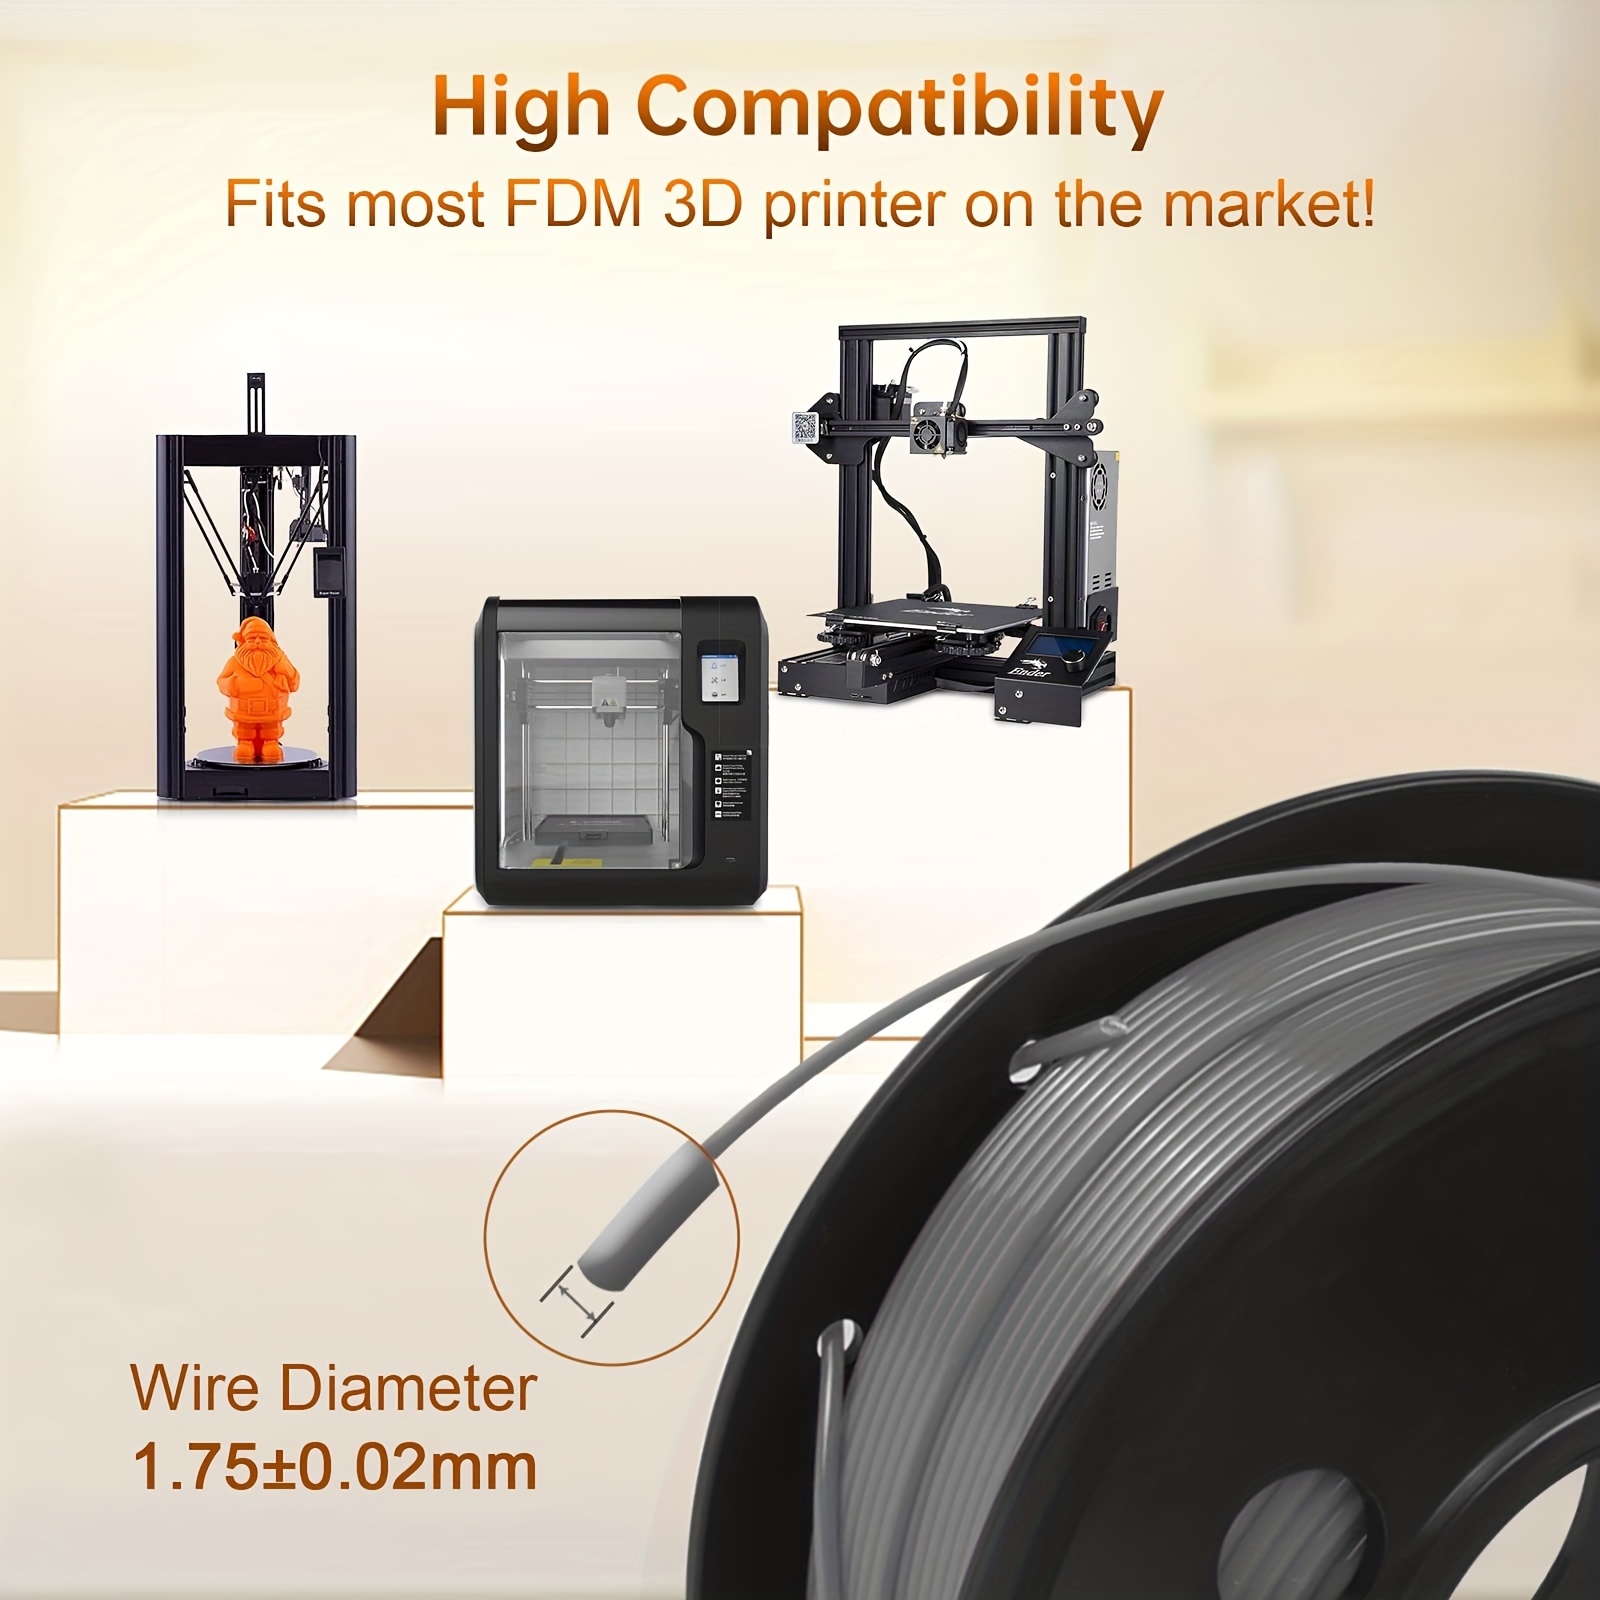 SUNLU PLA+ 3D Printer Filament 1.75mm,Dimensional Accuracy +/